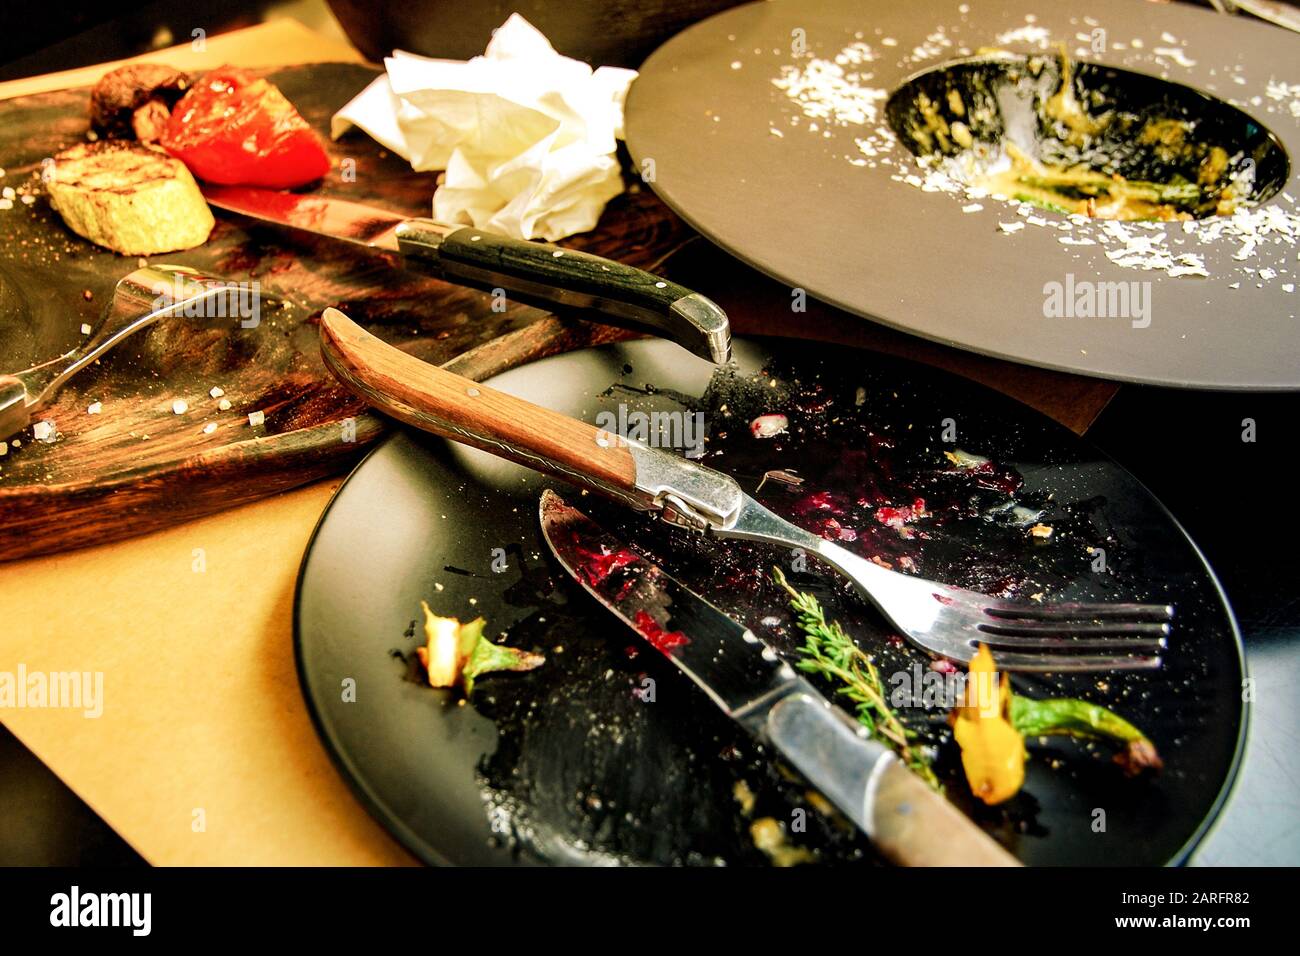 Table au restaurant avec des restes de nourriture sur des assiettes noires Banque D'Images